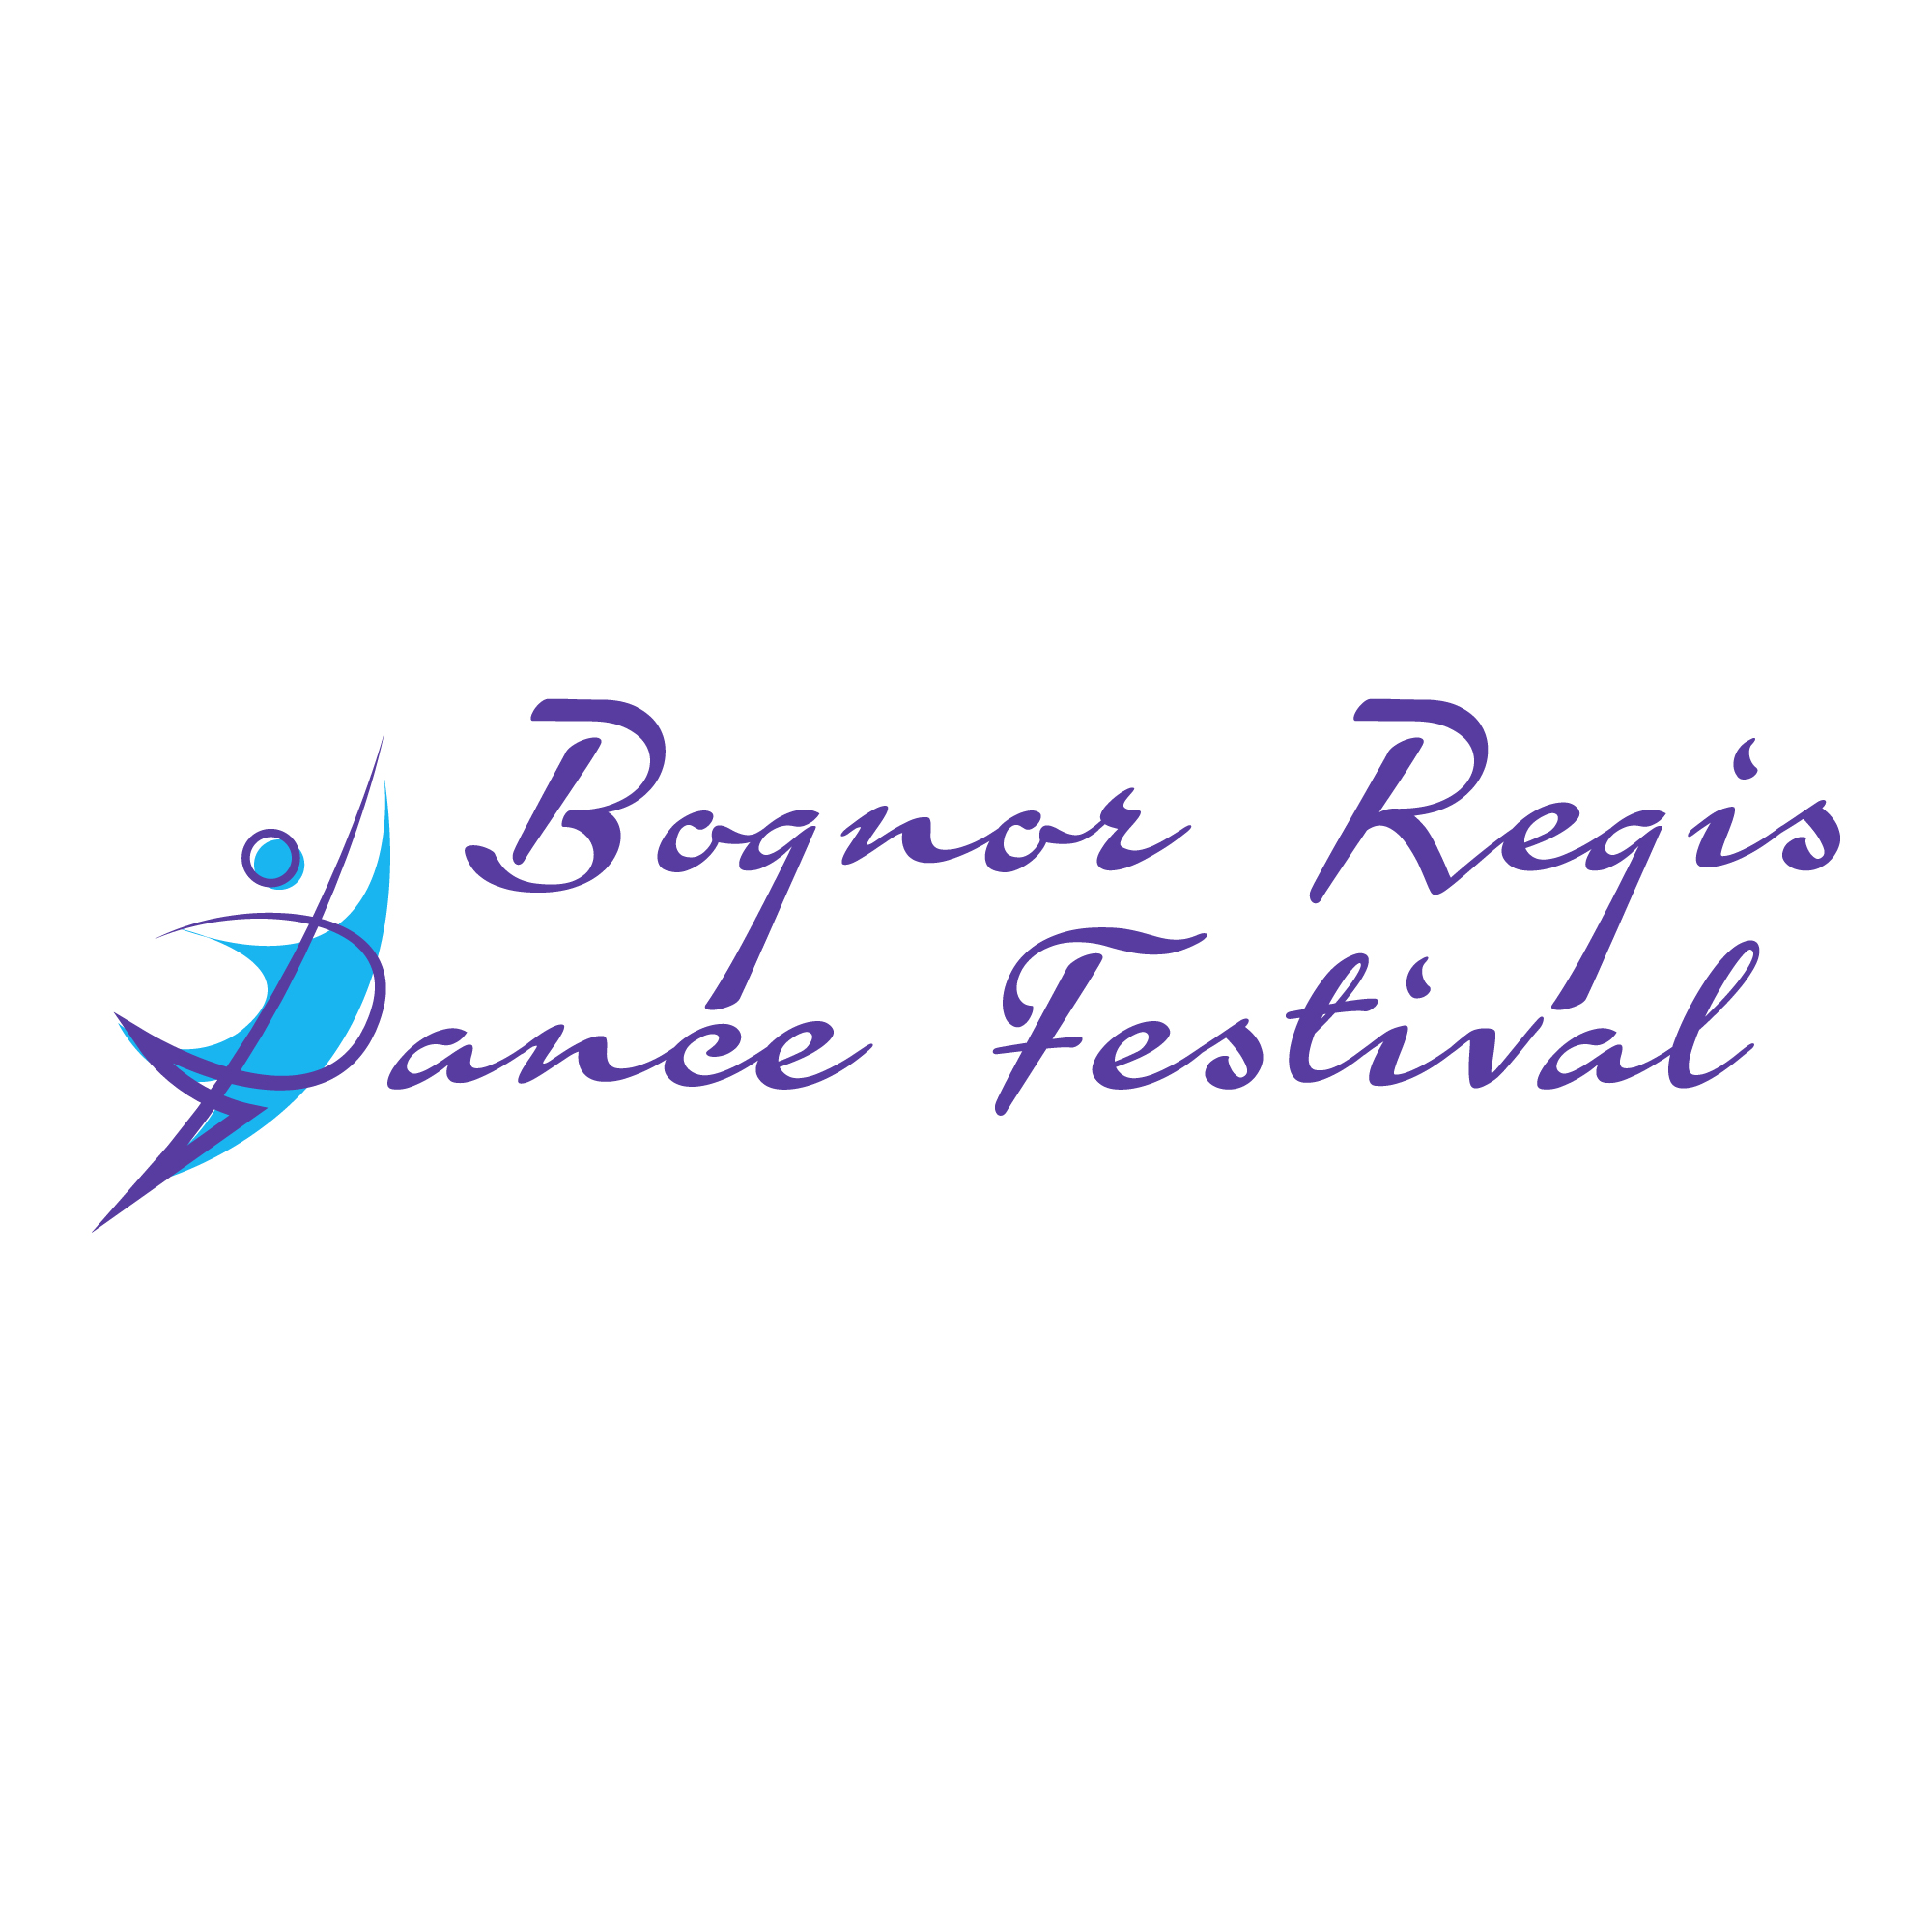 Bognor Regis Dance Festival 2019